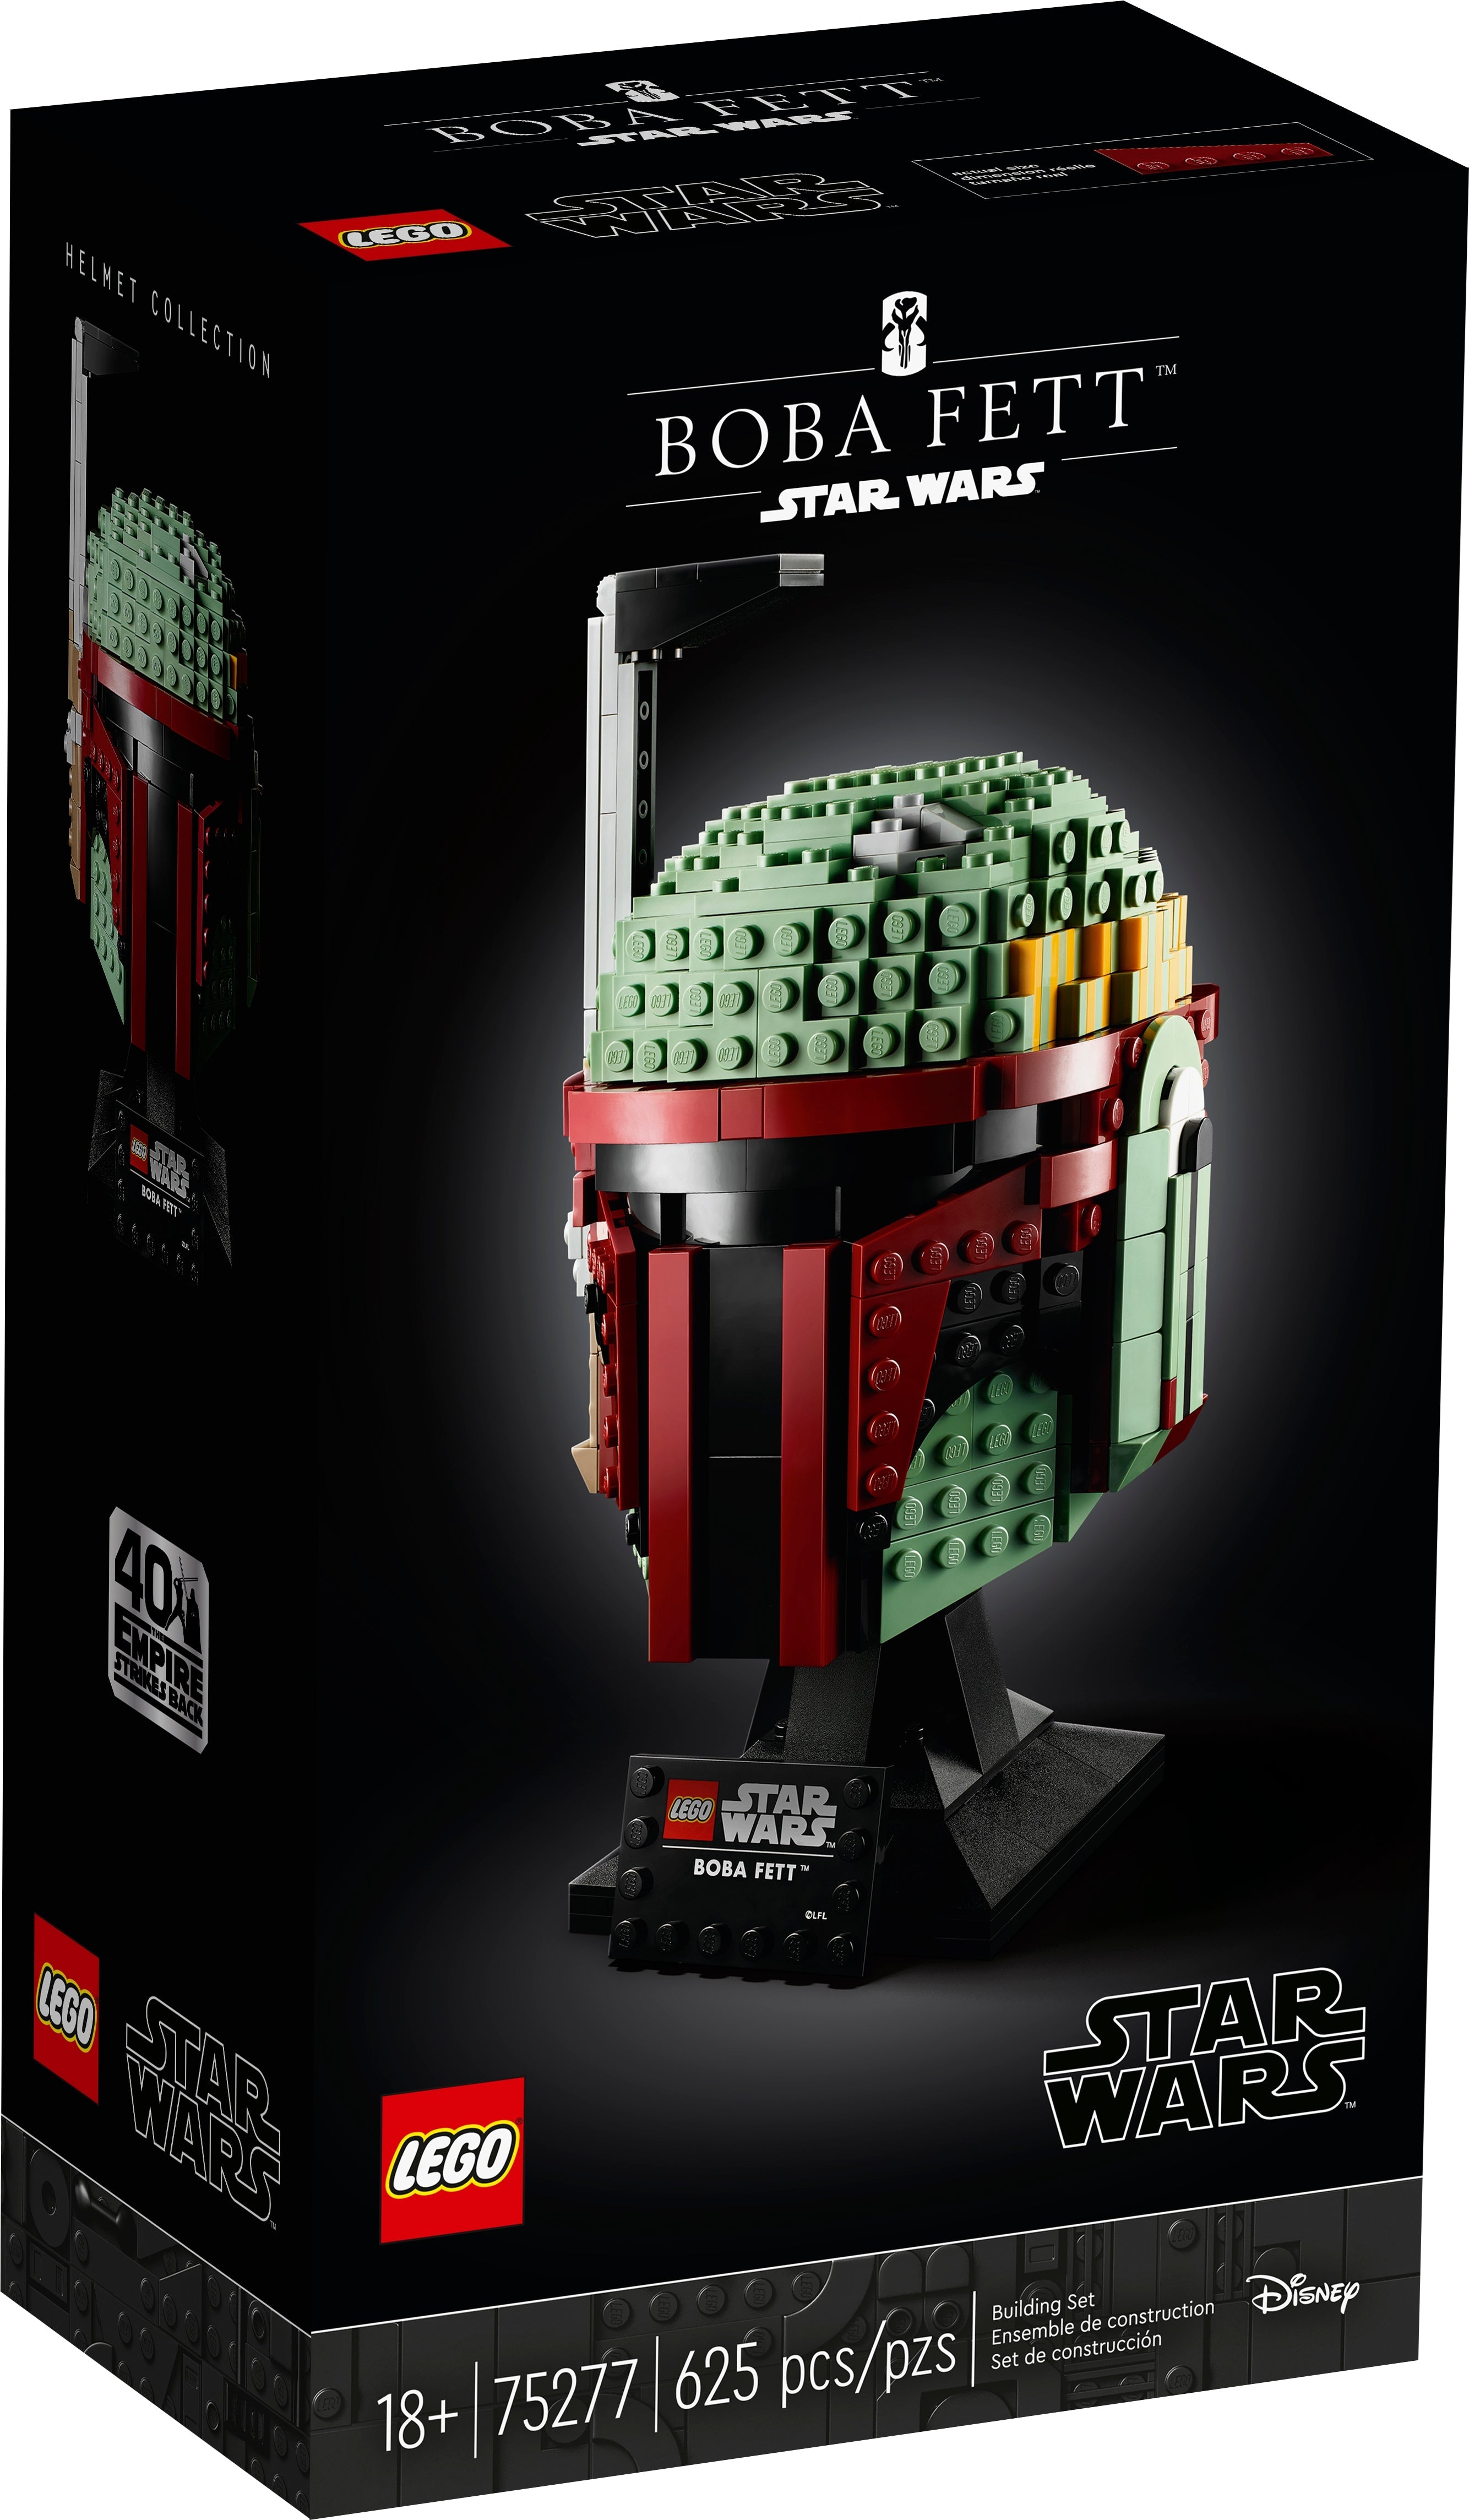 LEGO Star Wars Boba Fett Helm (75277) - im GOLDSTIEN.SHOP verfügbar mit Gratisversand ab Schweizer Lager! (5702016617221)